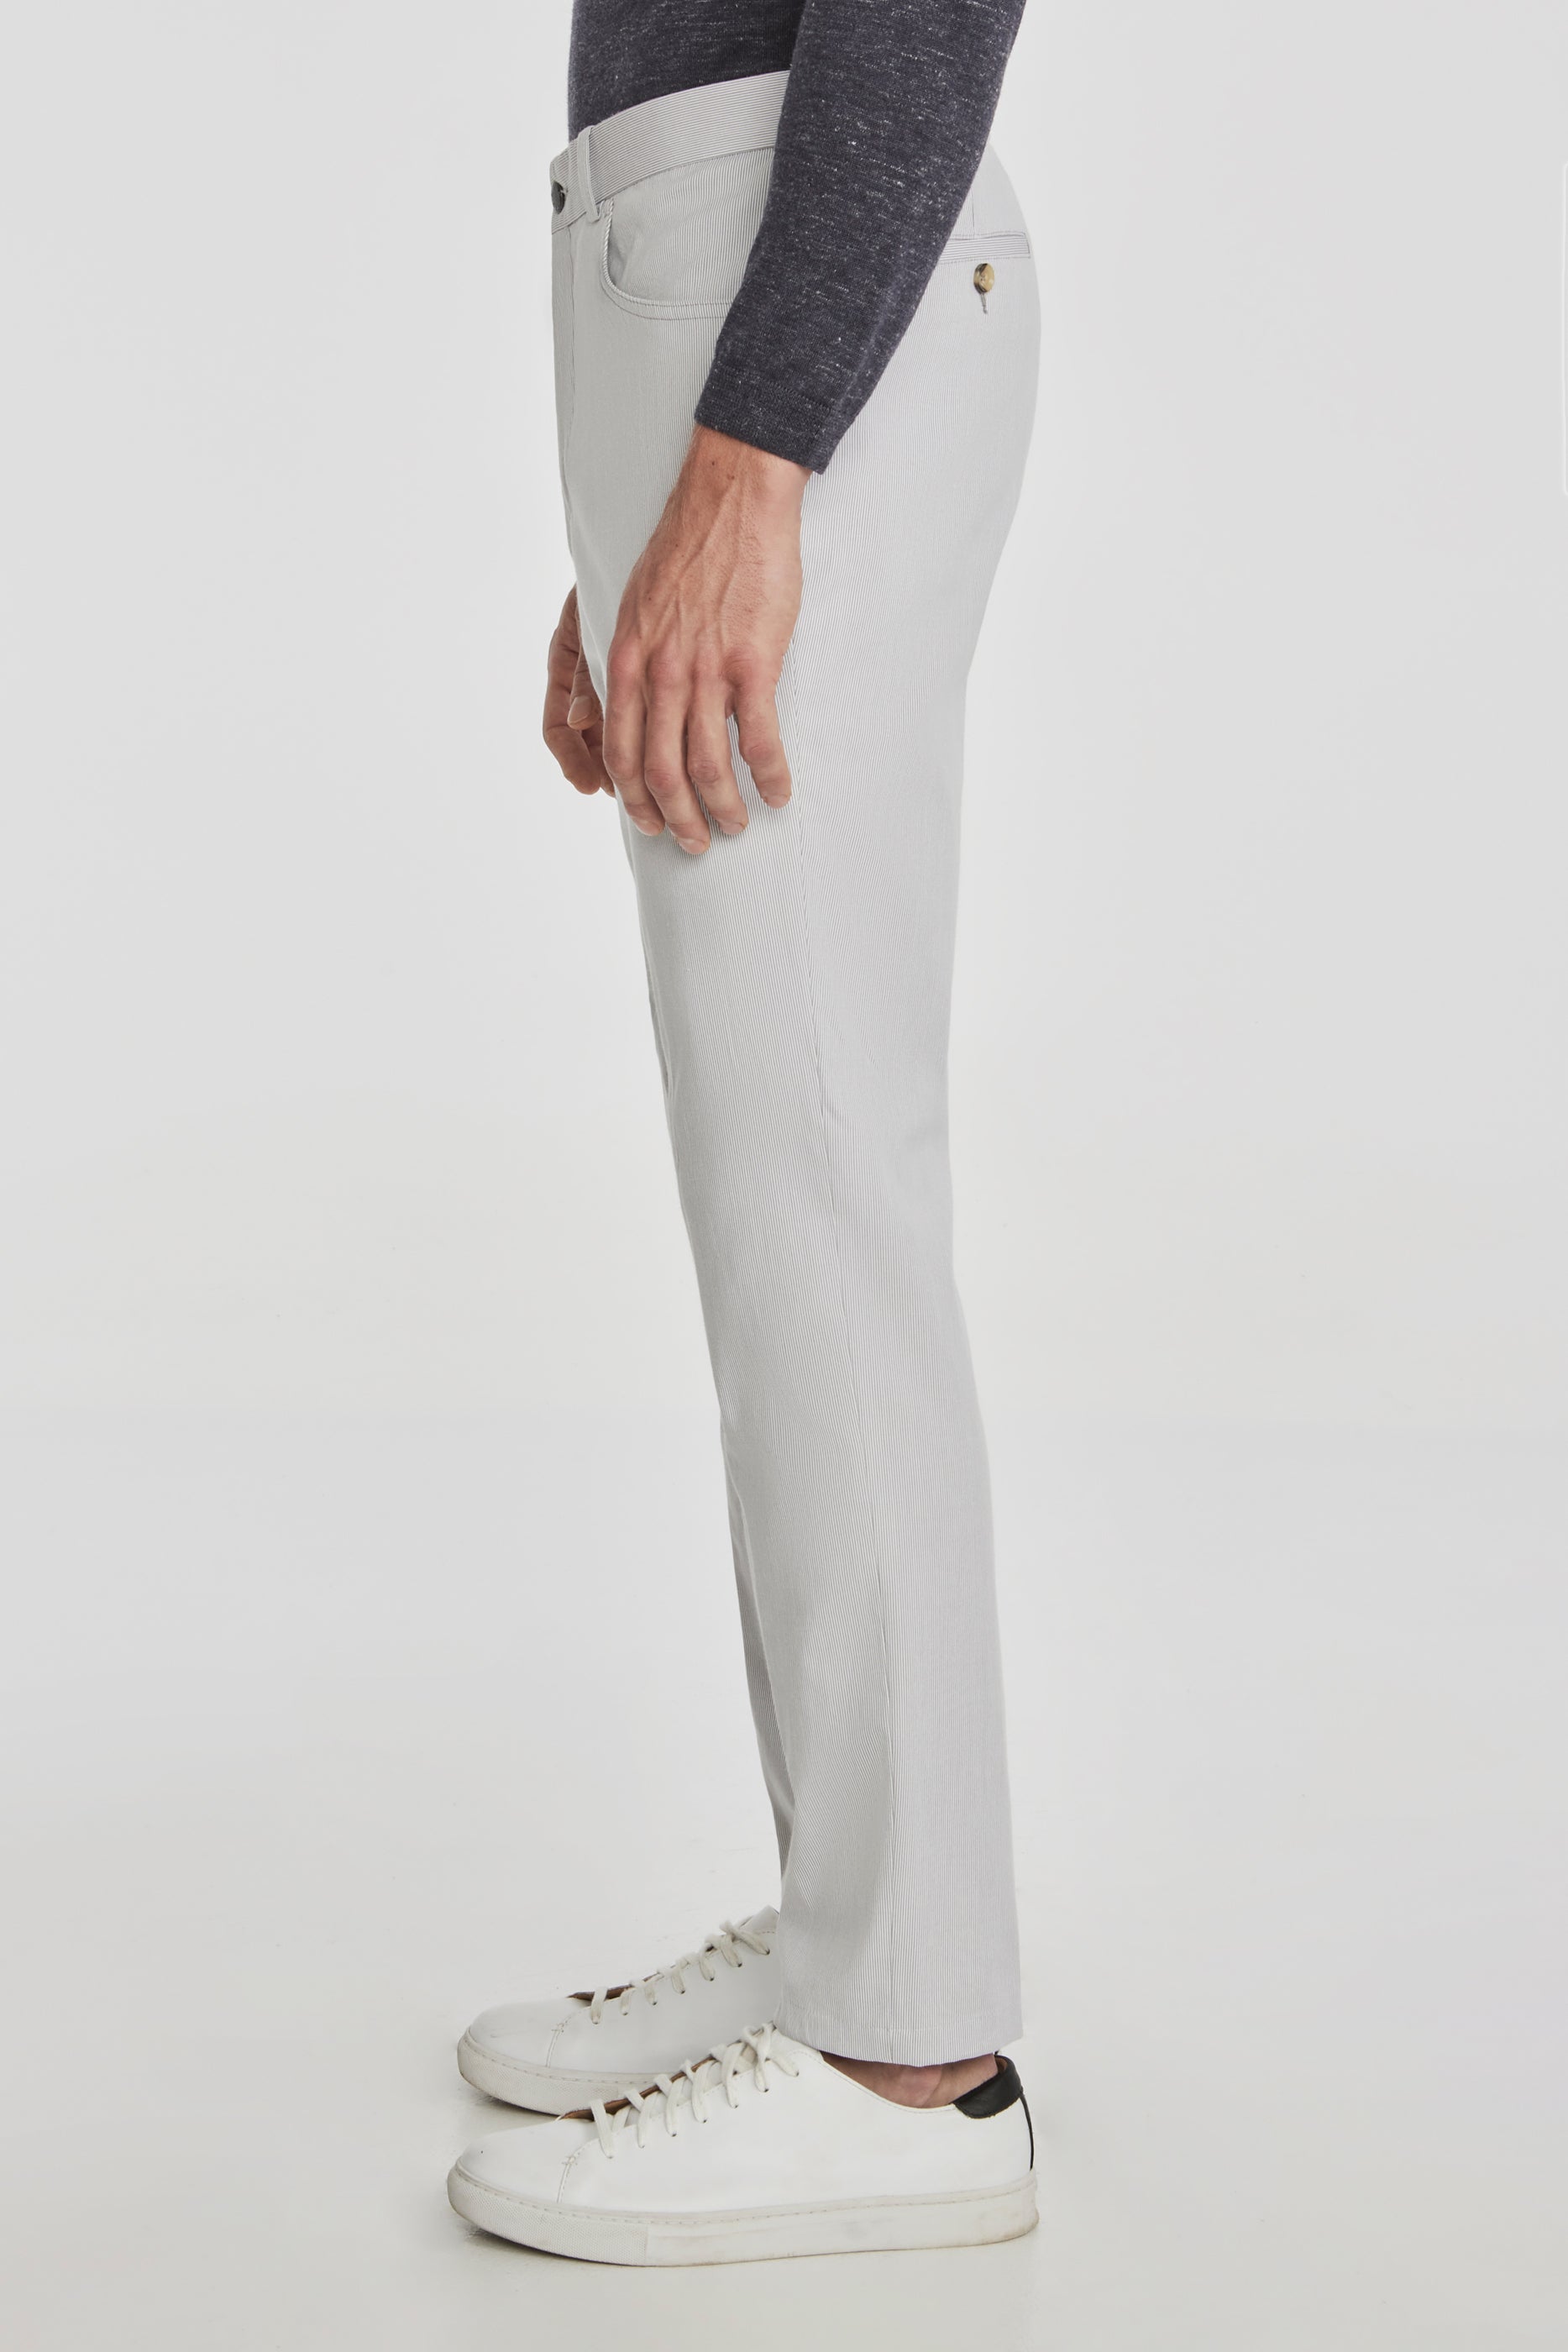 Vue alternative 3 Pantalon en coton extensible Pinfeather Sage à 5 poches, gris clair